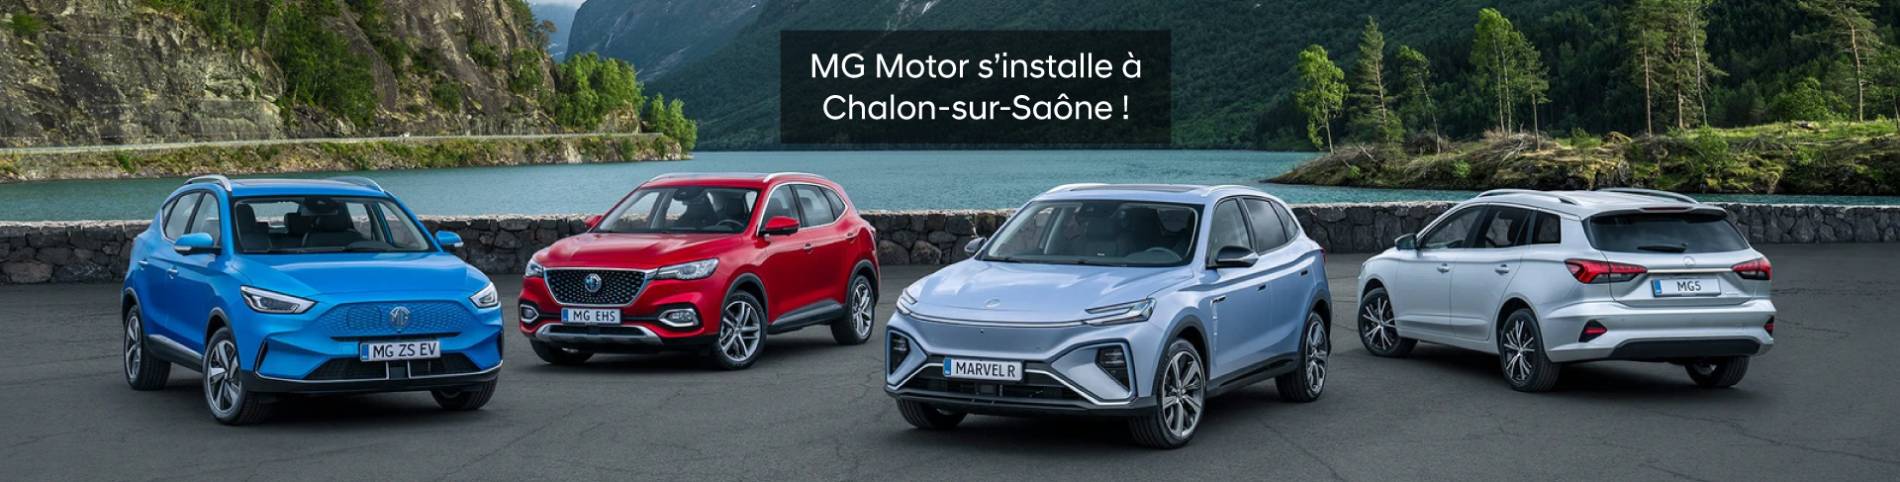 MG Motor s'installe à Chalon-sur-Saône